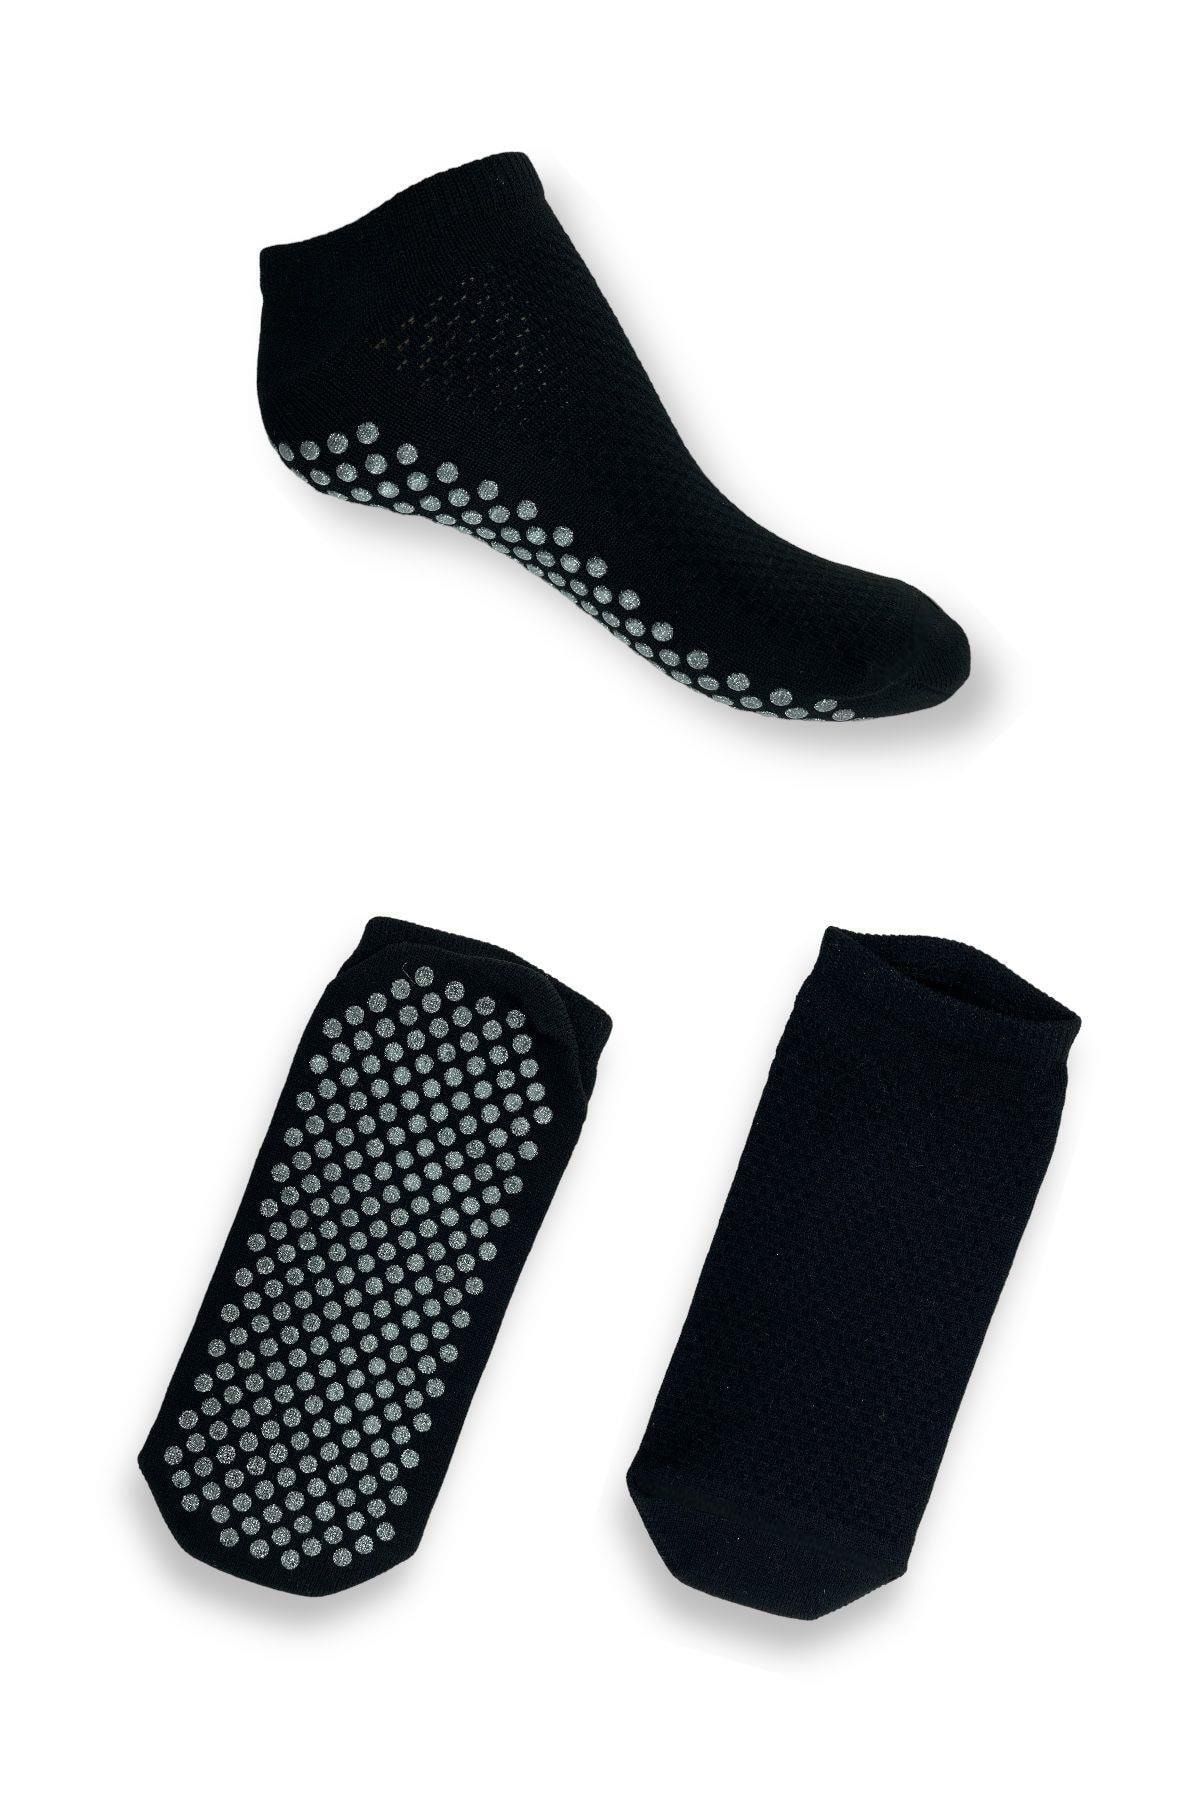 Belyy Socks 2 Li Paket Taban Altı Kaydırmaz Baskılı Yoga Dans Ve Plates Çorabı